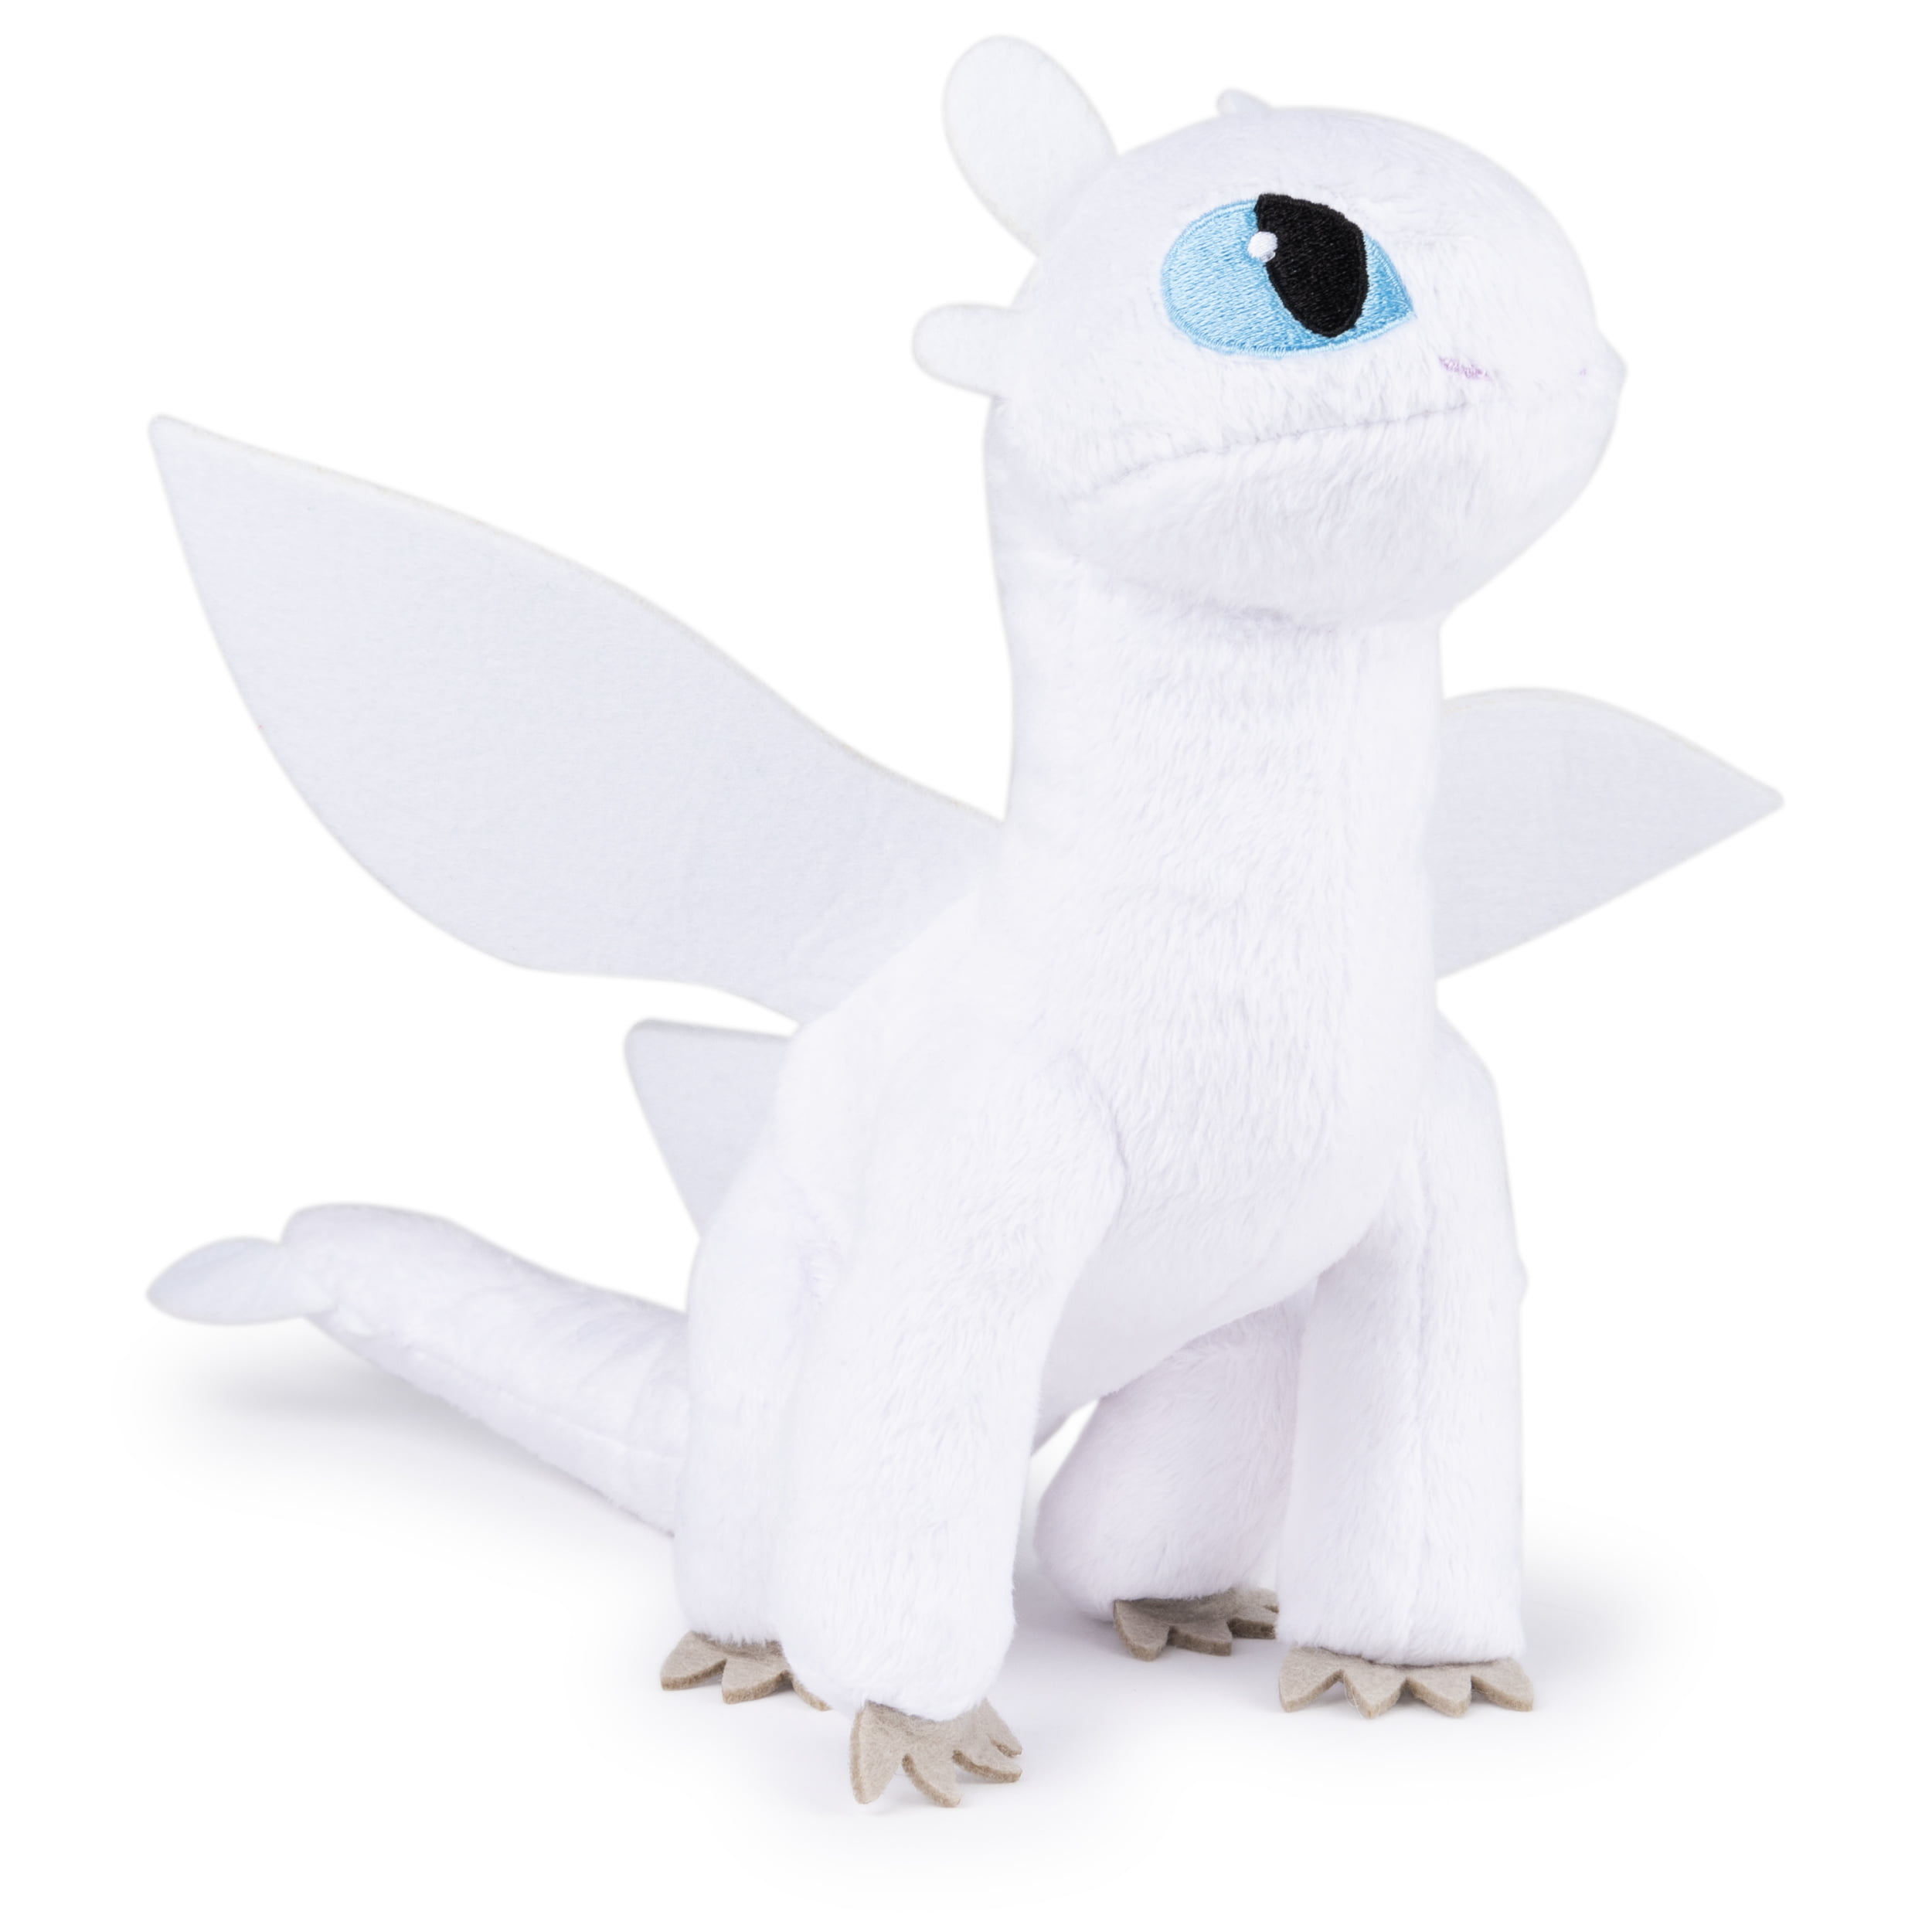 DreamWorks Dragons, Lightfury 8-inch 